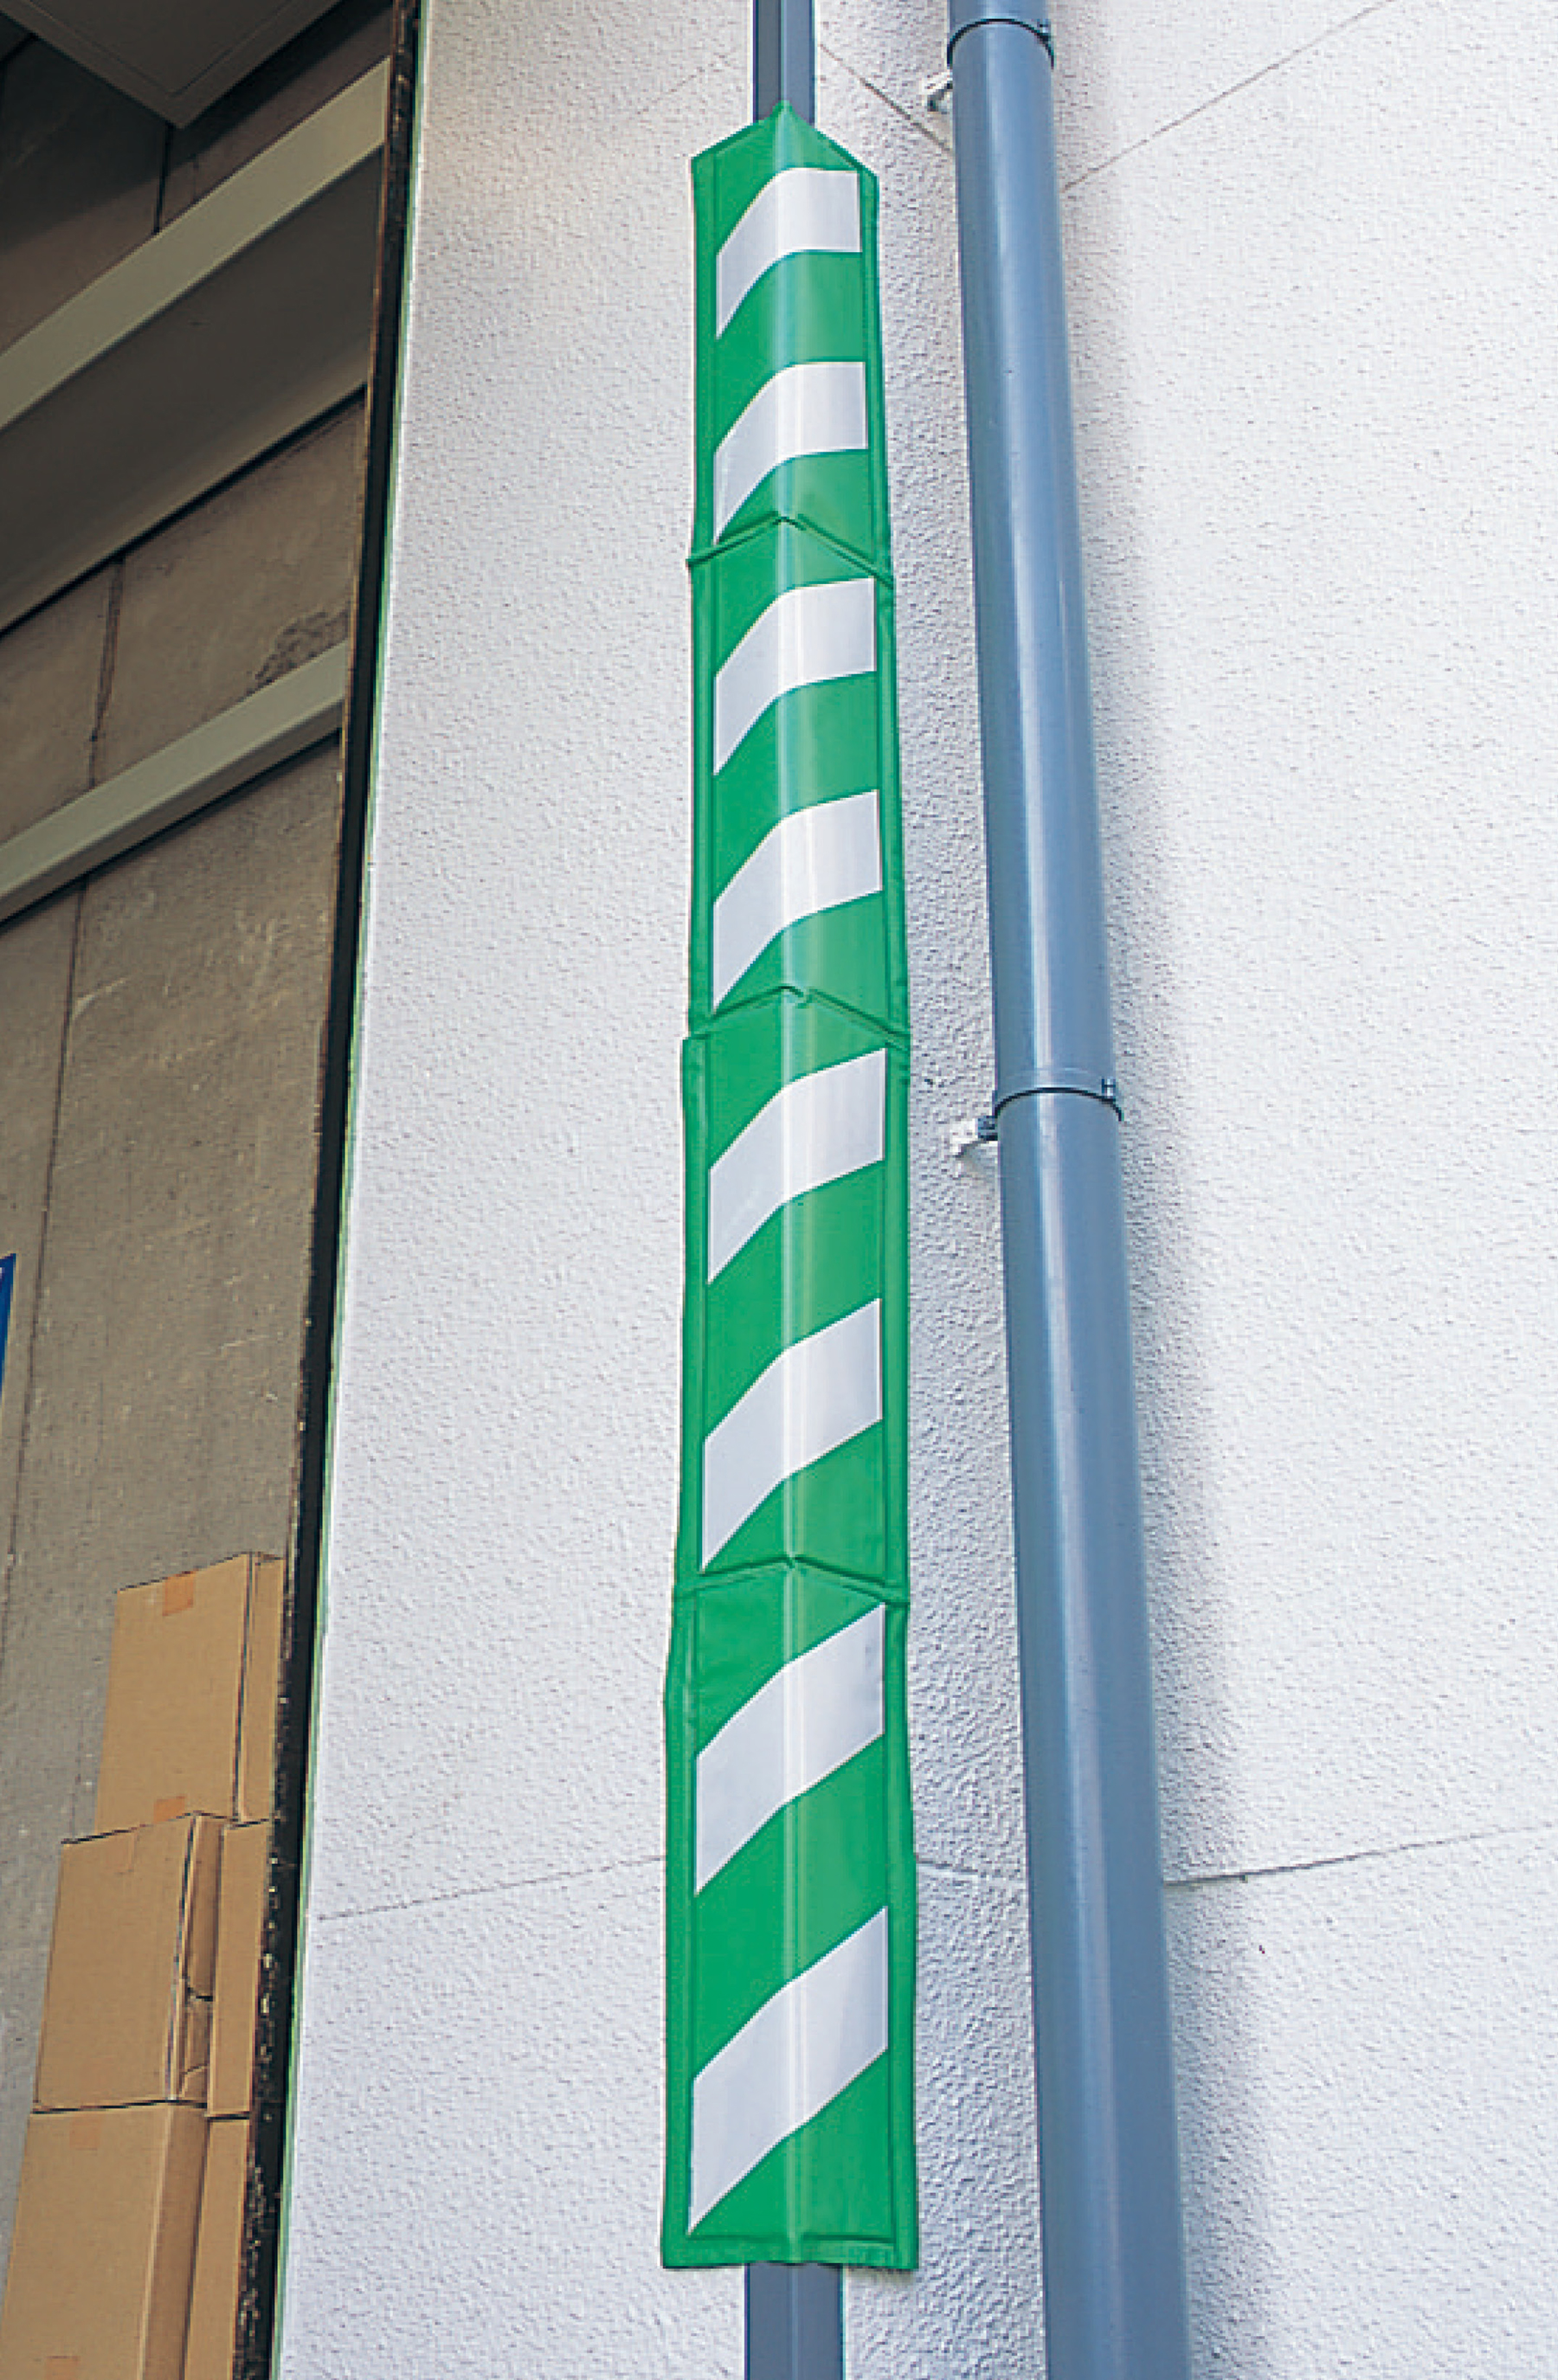 トラクッション 平板 無反射タイプ 247062 TRC-205WG,（安全標識・安全用品 日本緑十字社）,の通販  詳細情報,電設資材・電線・ケーブル・安全用品 ネット通販 Watanabe 電設資材 電線 ケーブル ネット 通販 Watanabe